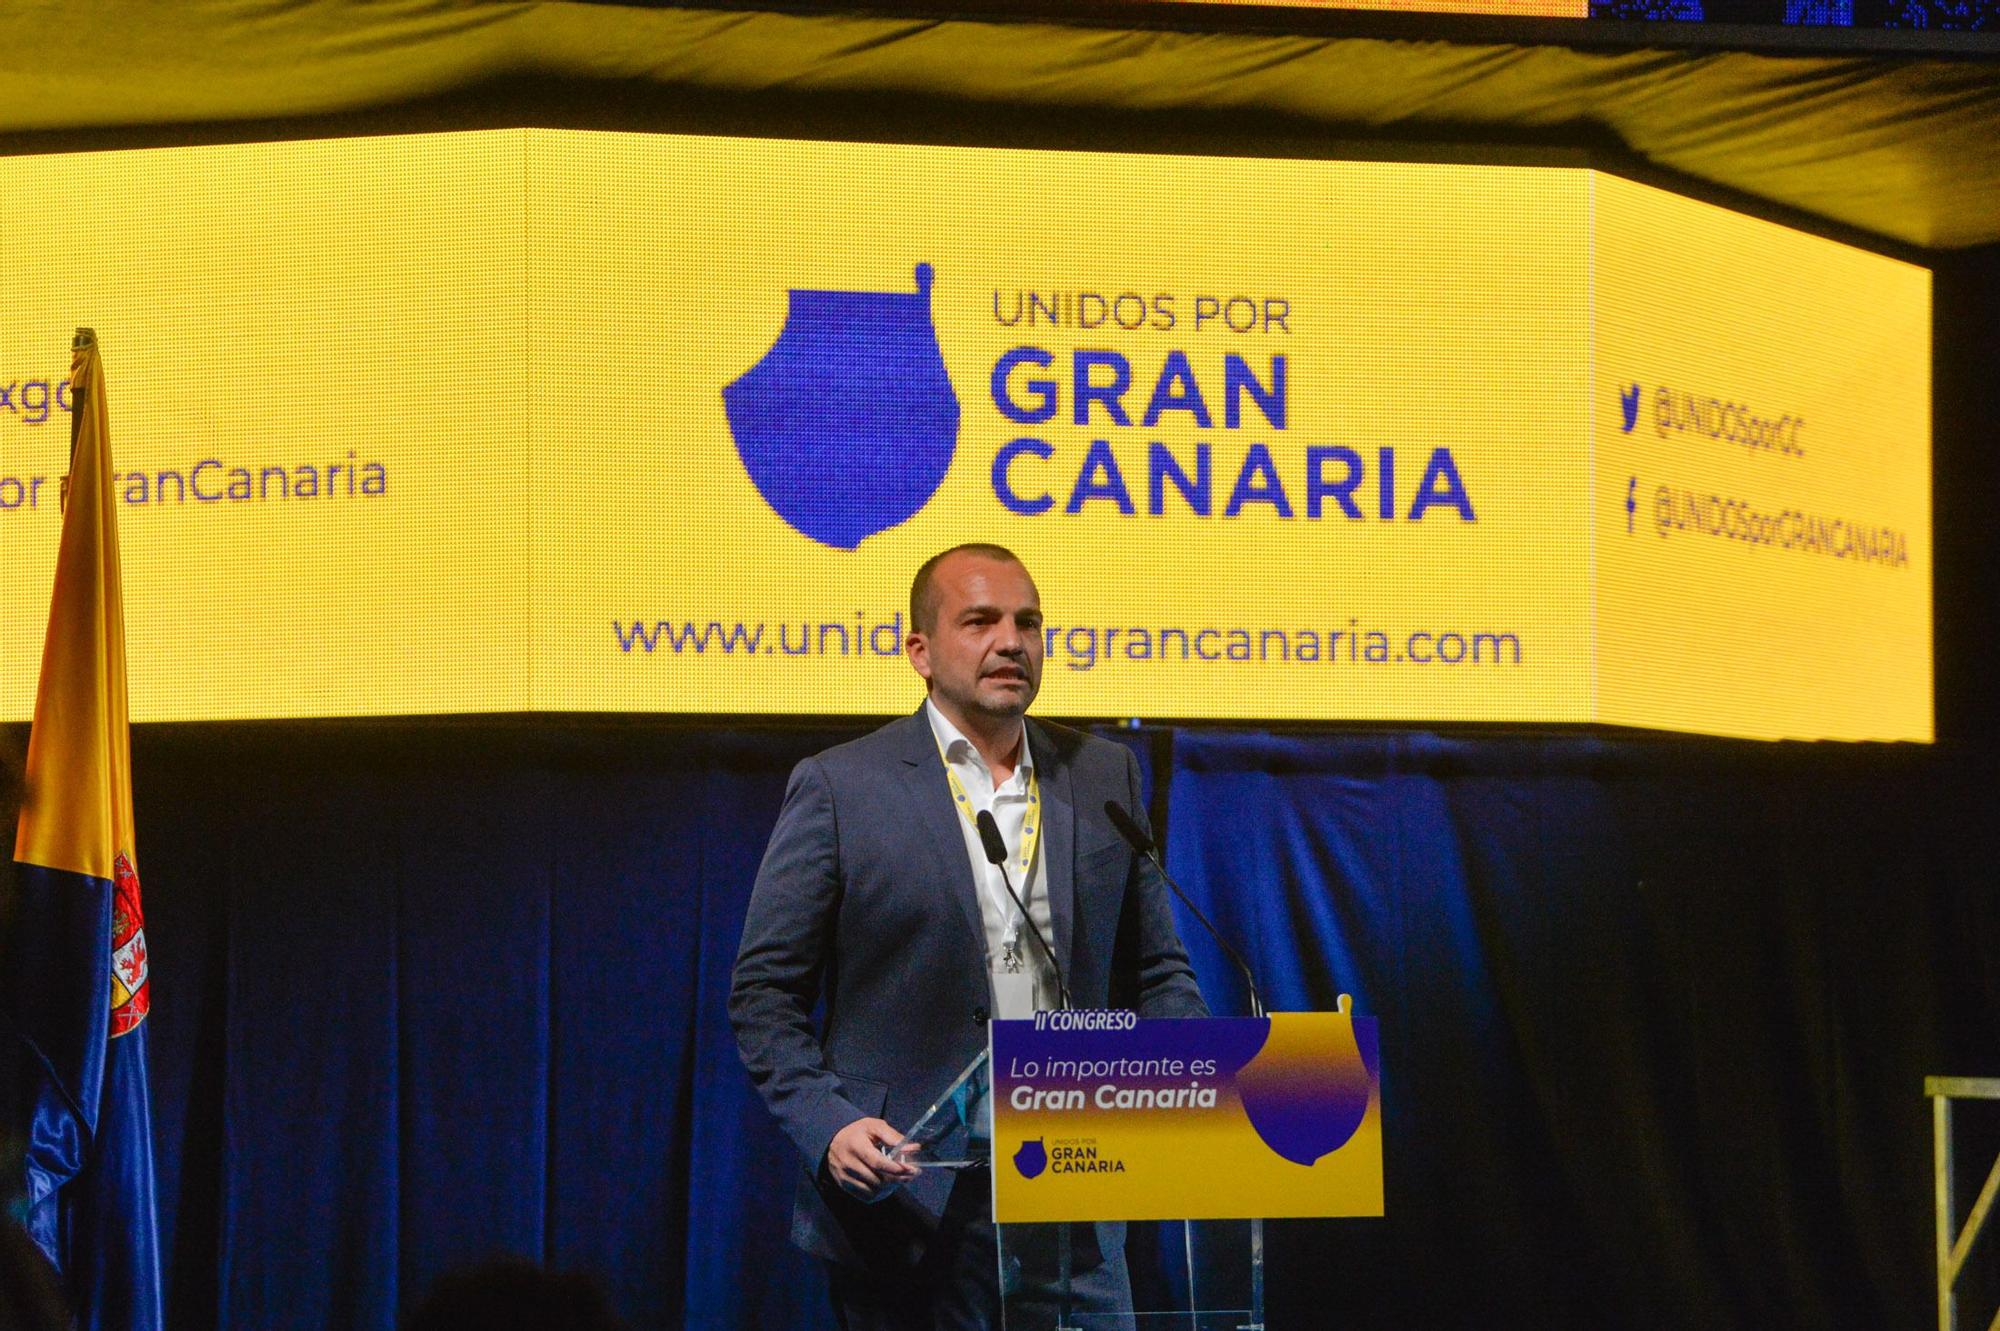 II Congreso de Unidos por Gran Canaria